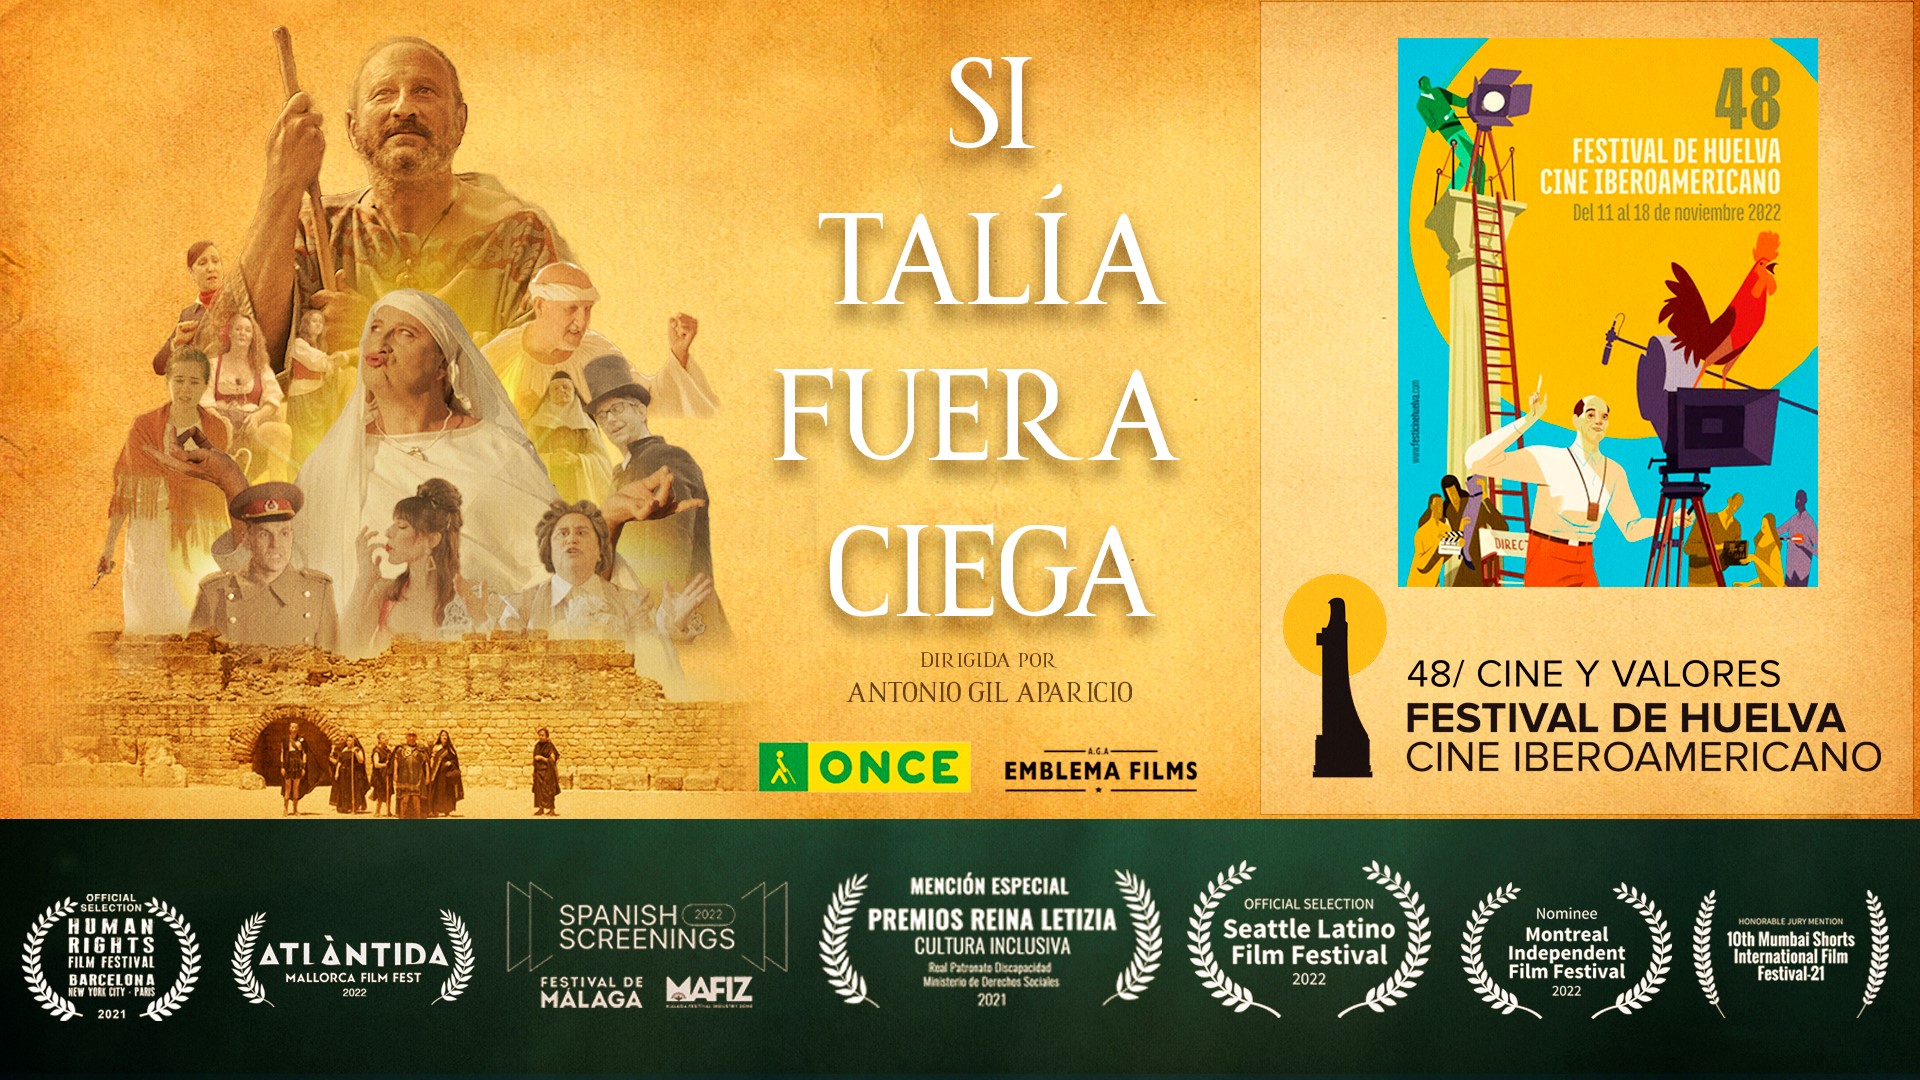 El cine extremeño presente en el festival de Huelva de cine iberoamericano, con la película «Si Talía fuera ciega» de Antonio Gil Aparicio